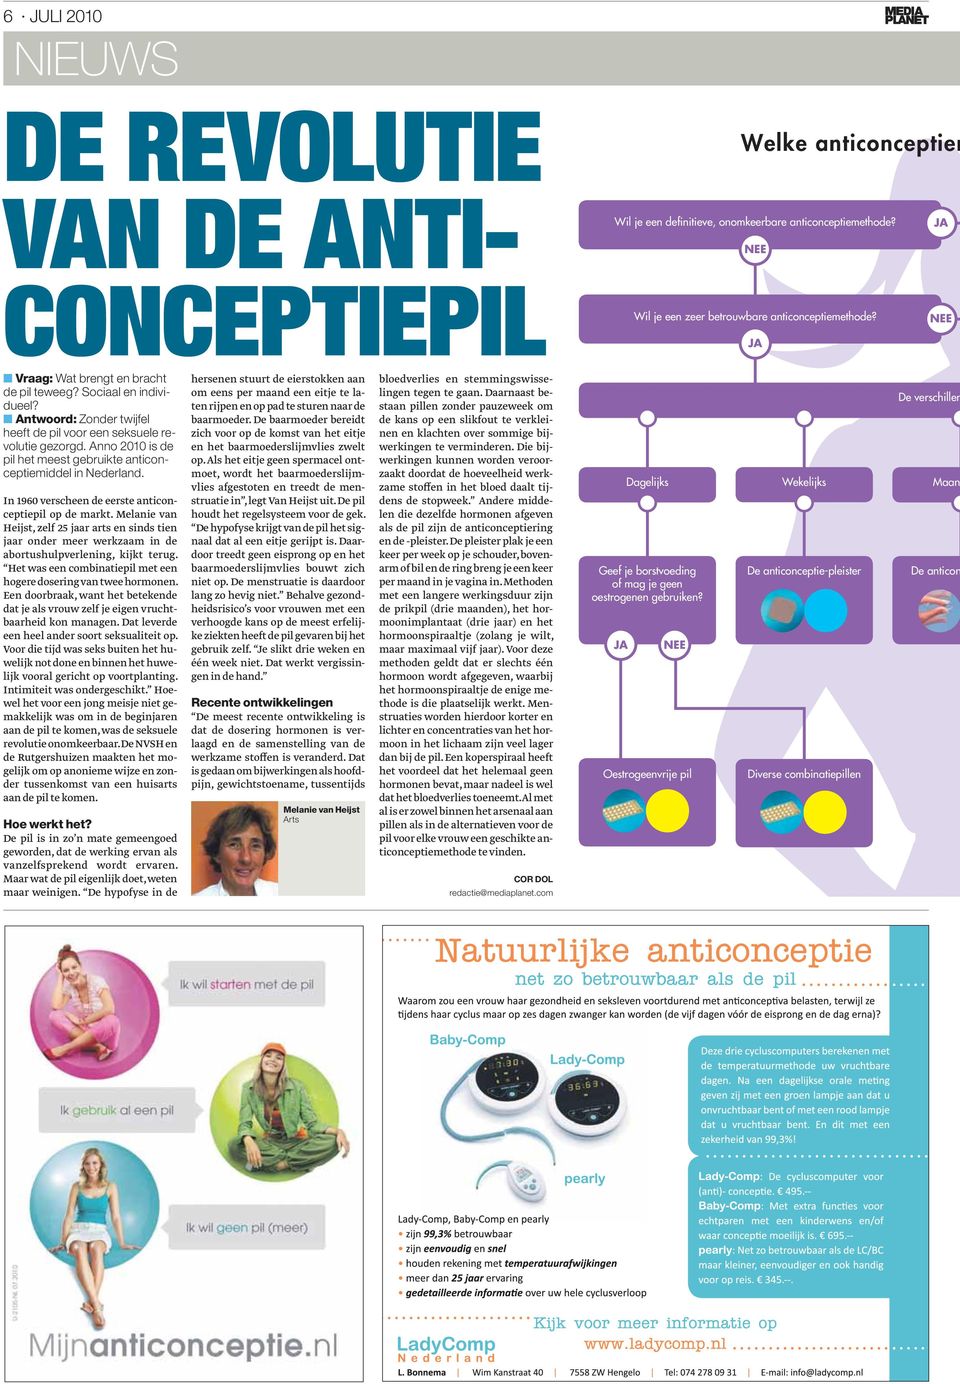 Anno 2010 is de pil het meest gebruikte anticonceptiemiddel in Nederland. In 1960 verscheen de eerste anticonceptiepil op de markt.